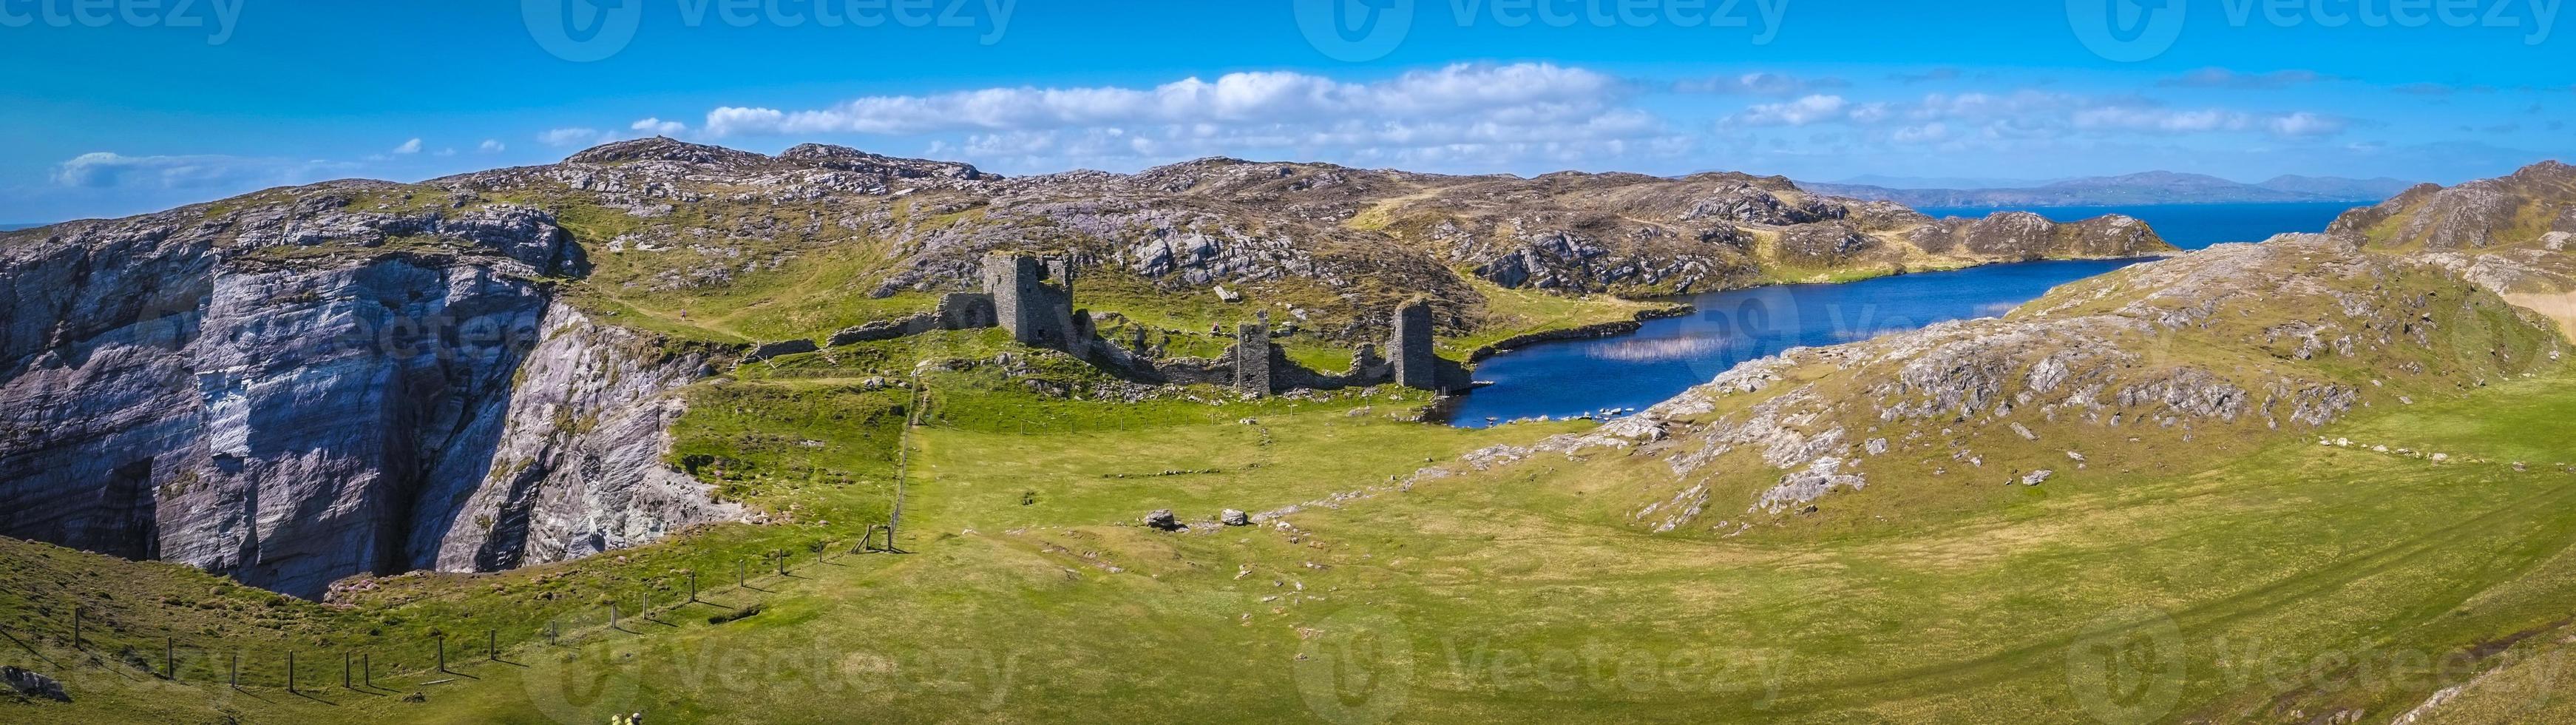 Relajarse en el antiguo castillo de tres cabezas en la península de Mizen en Irlanda foto